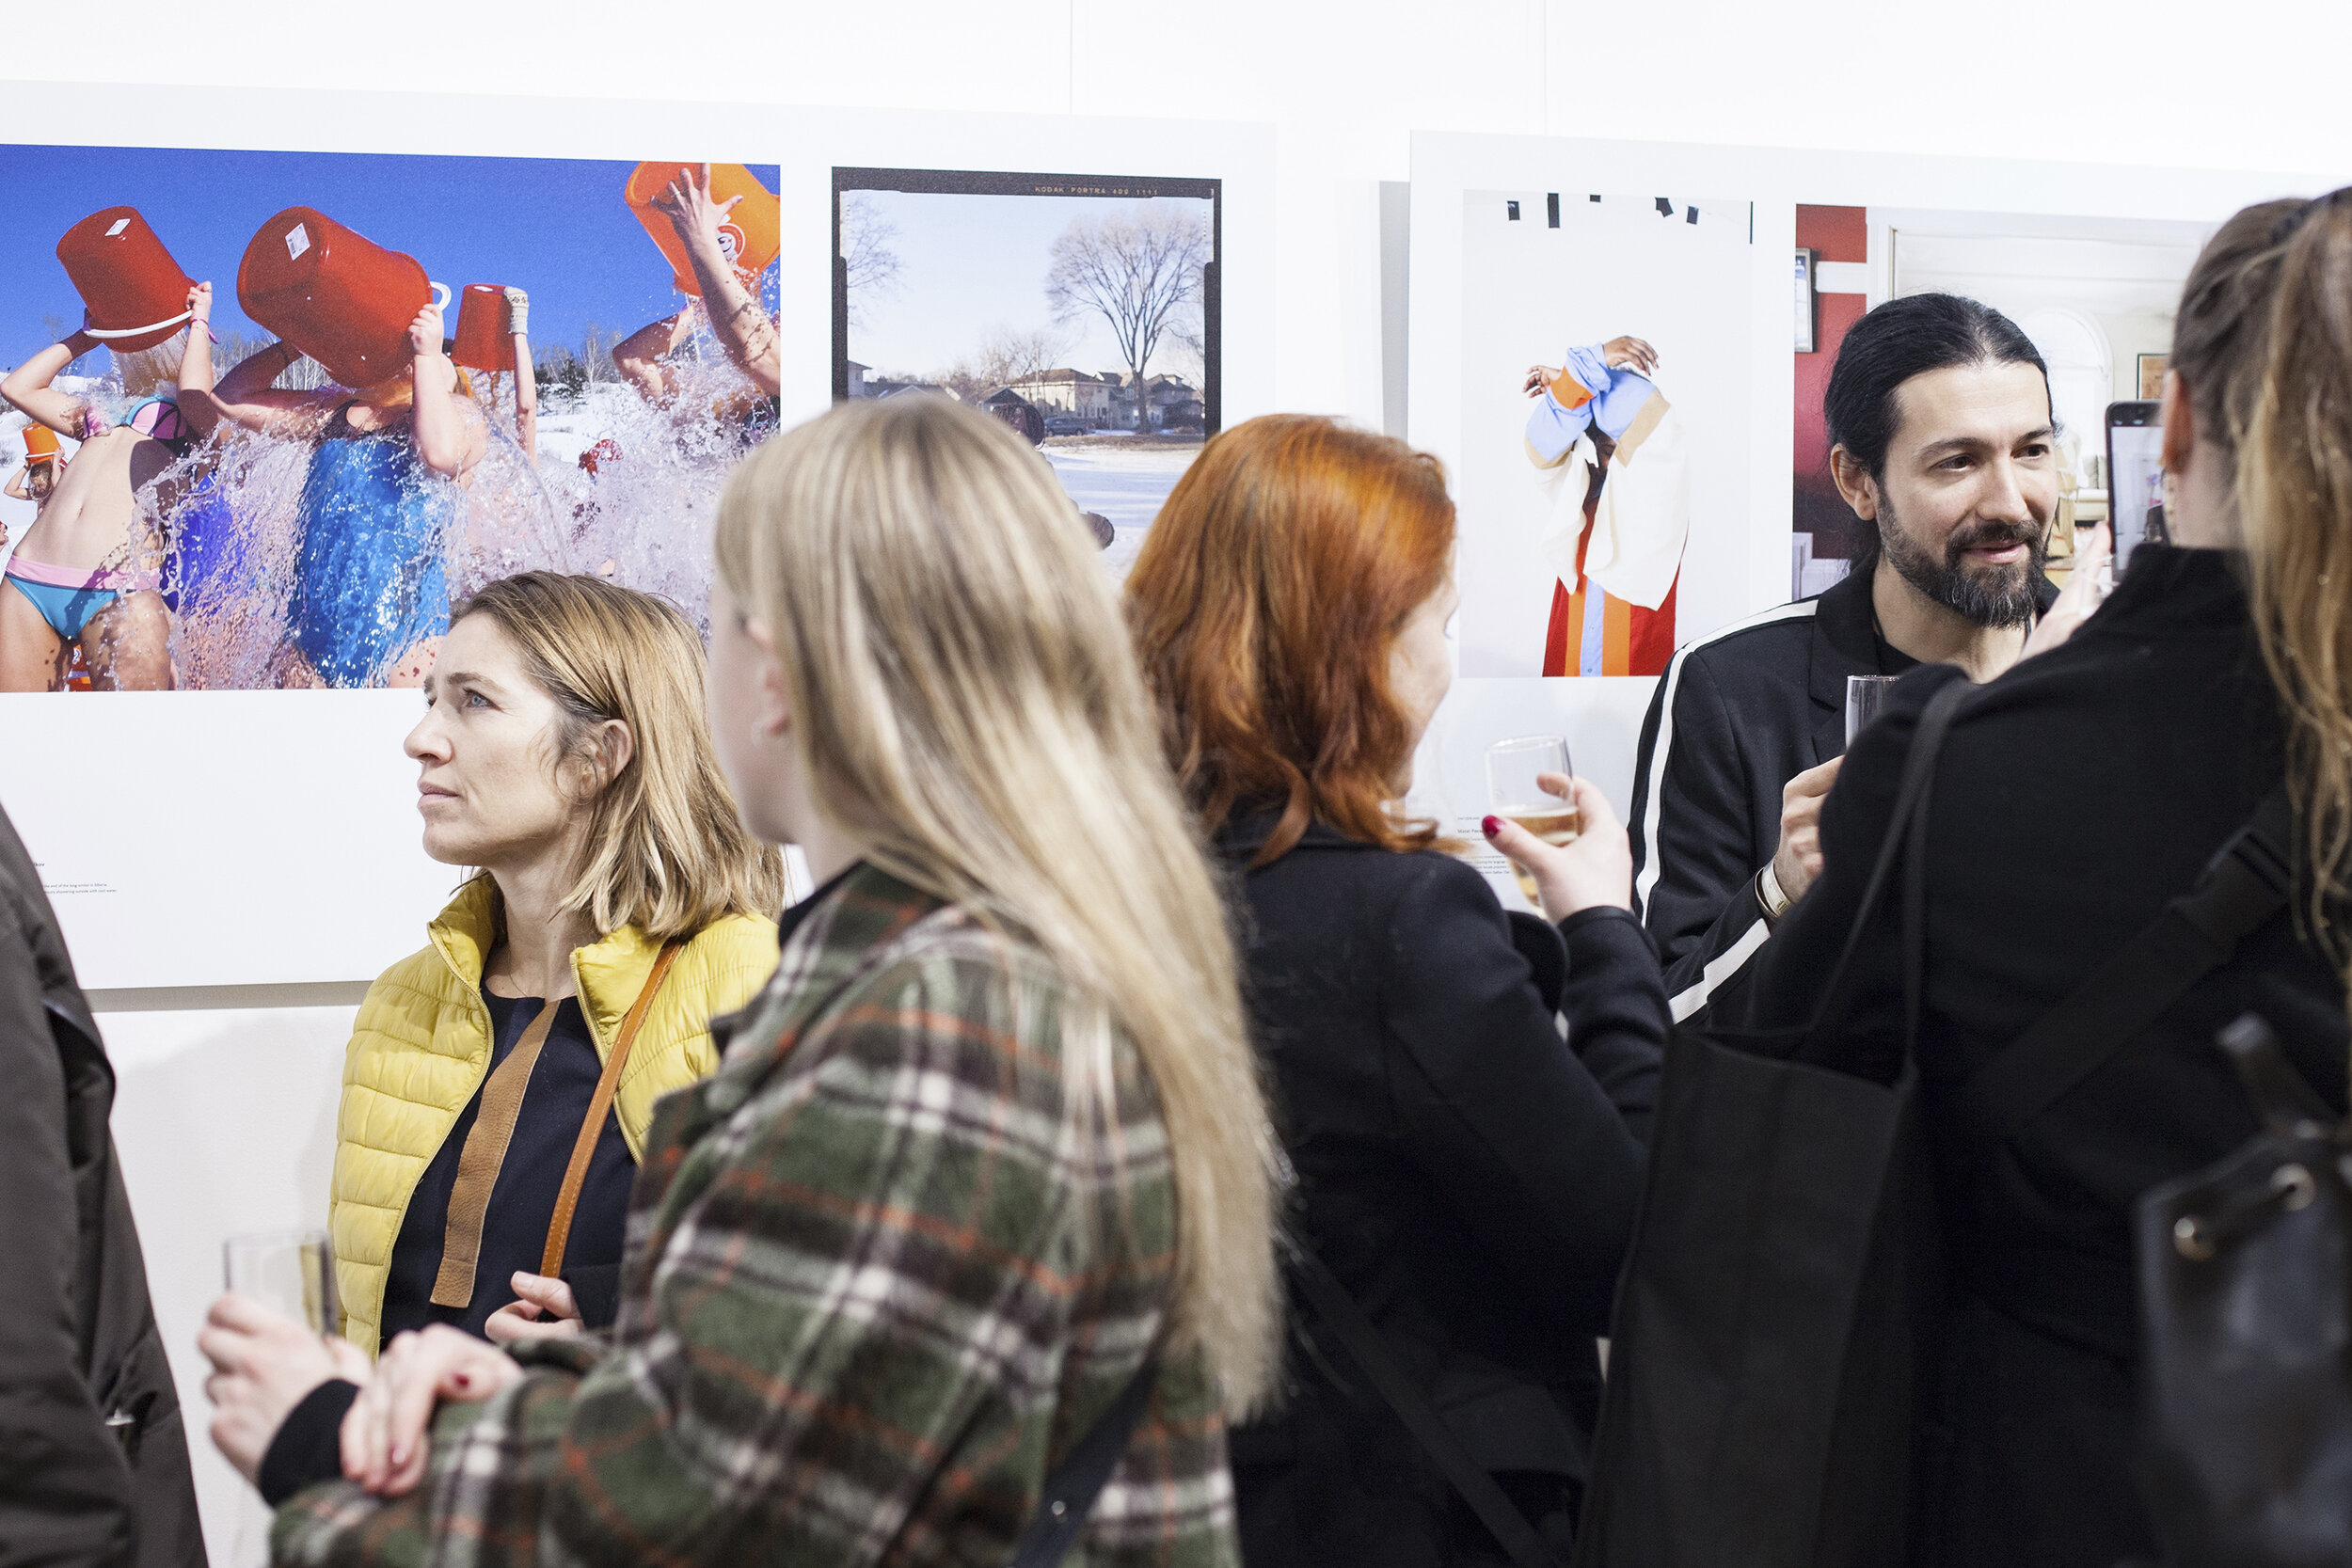  LensCulture 2019 Emerging Talent Awards, Galerie Joseph, Paris, France, 9.11.2019 